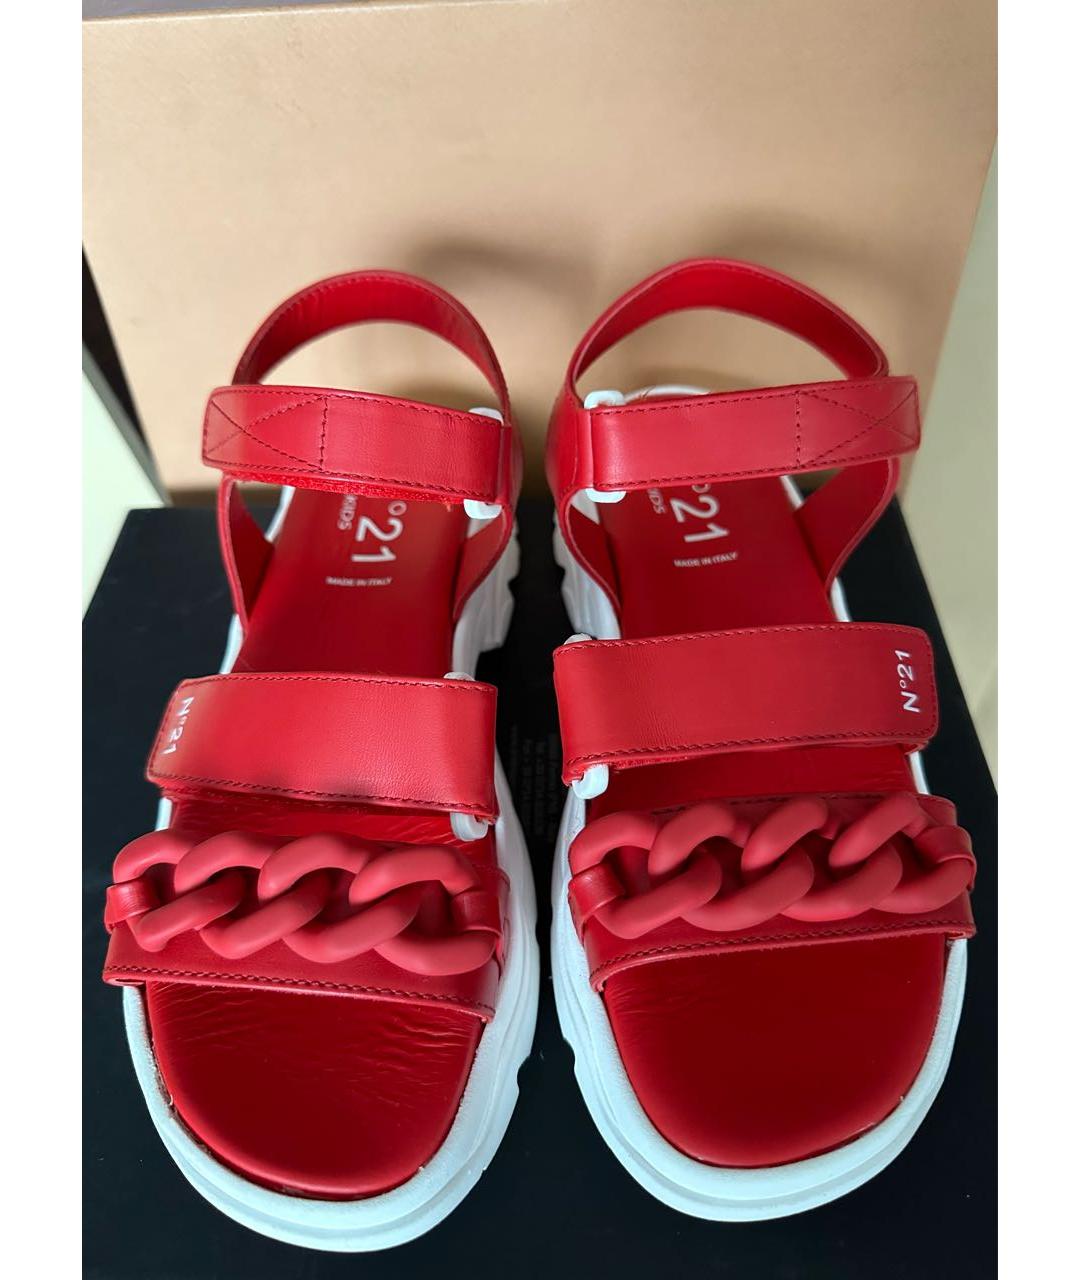 NO. 21 Красные кожаные сандалии, фото 2